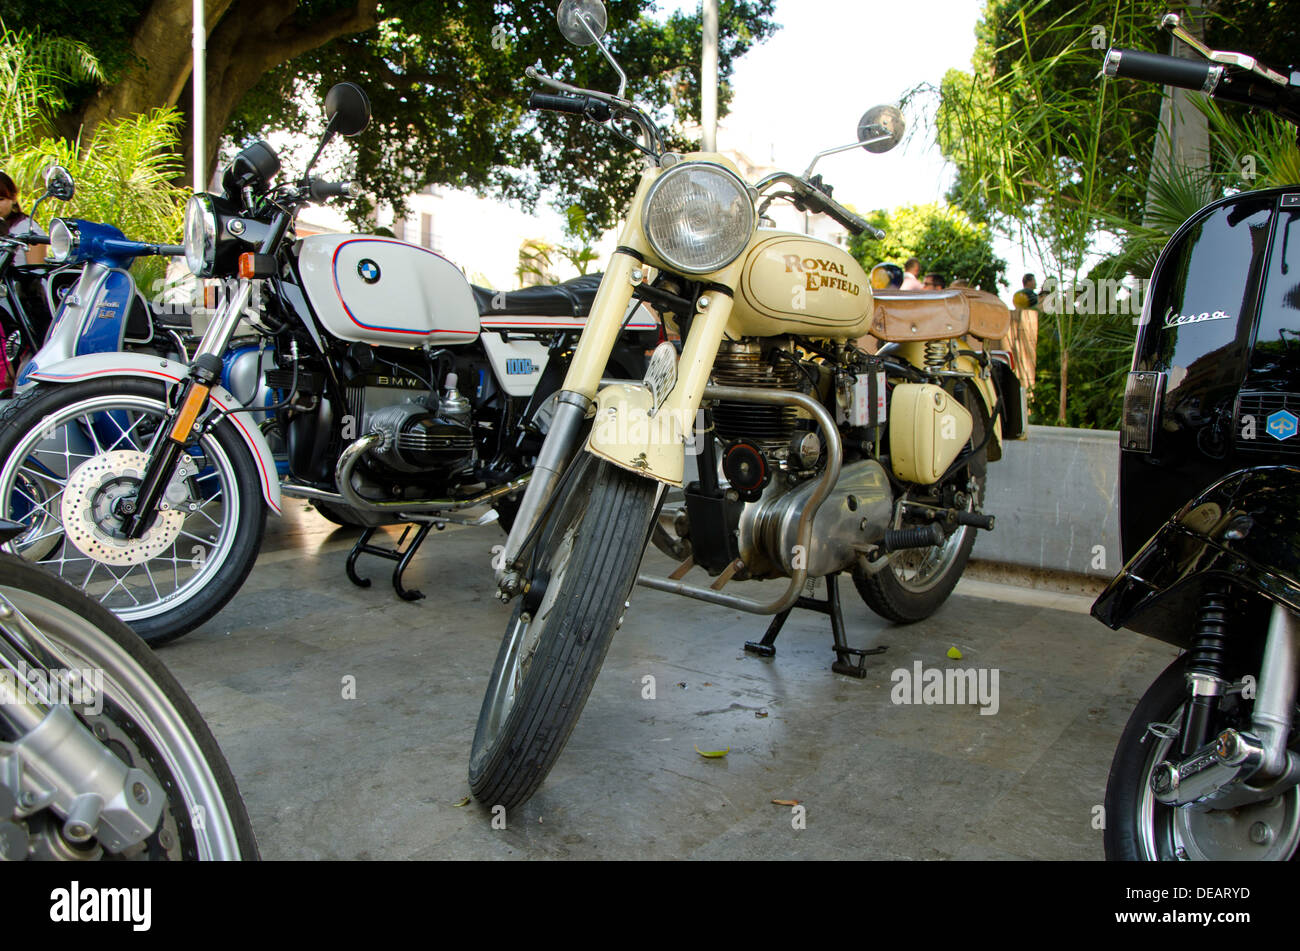 Royal Enfield Bullet et BMW 1000cc classic motos sur l'affichage à une moto vintage réunion en coin, Andalousie, espagne. Banque D'Images